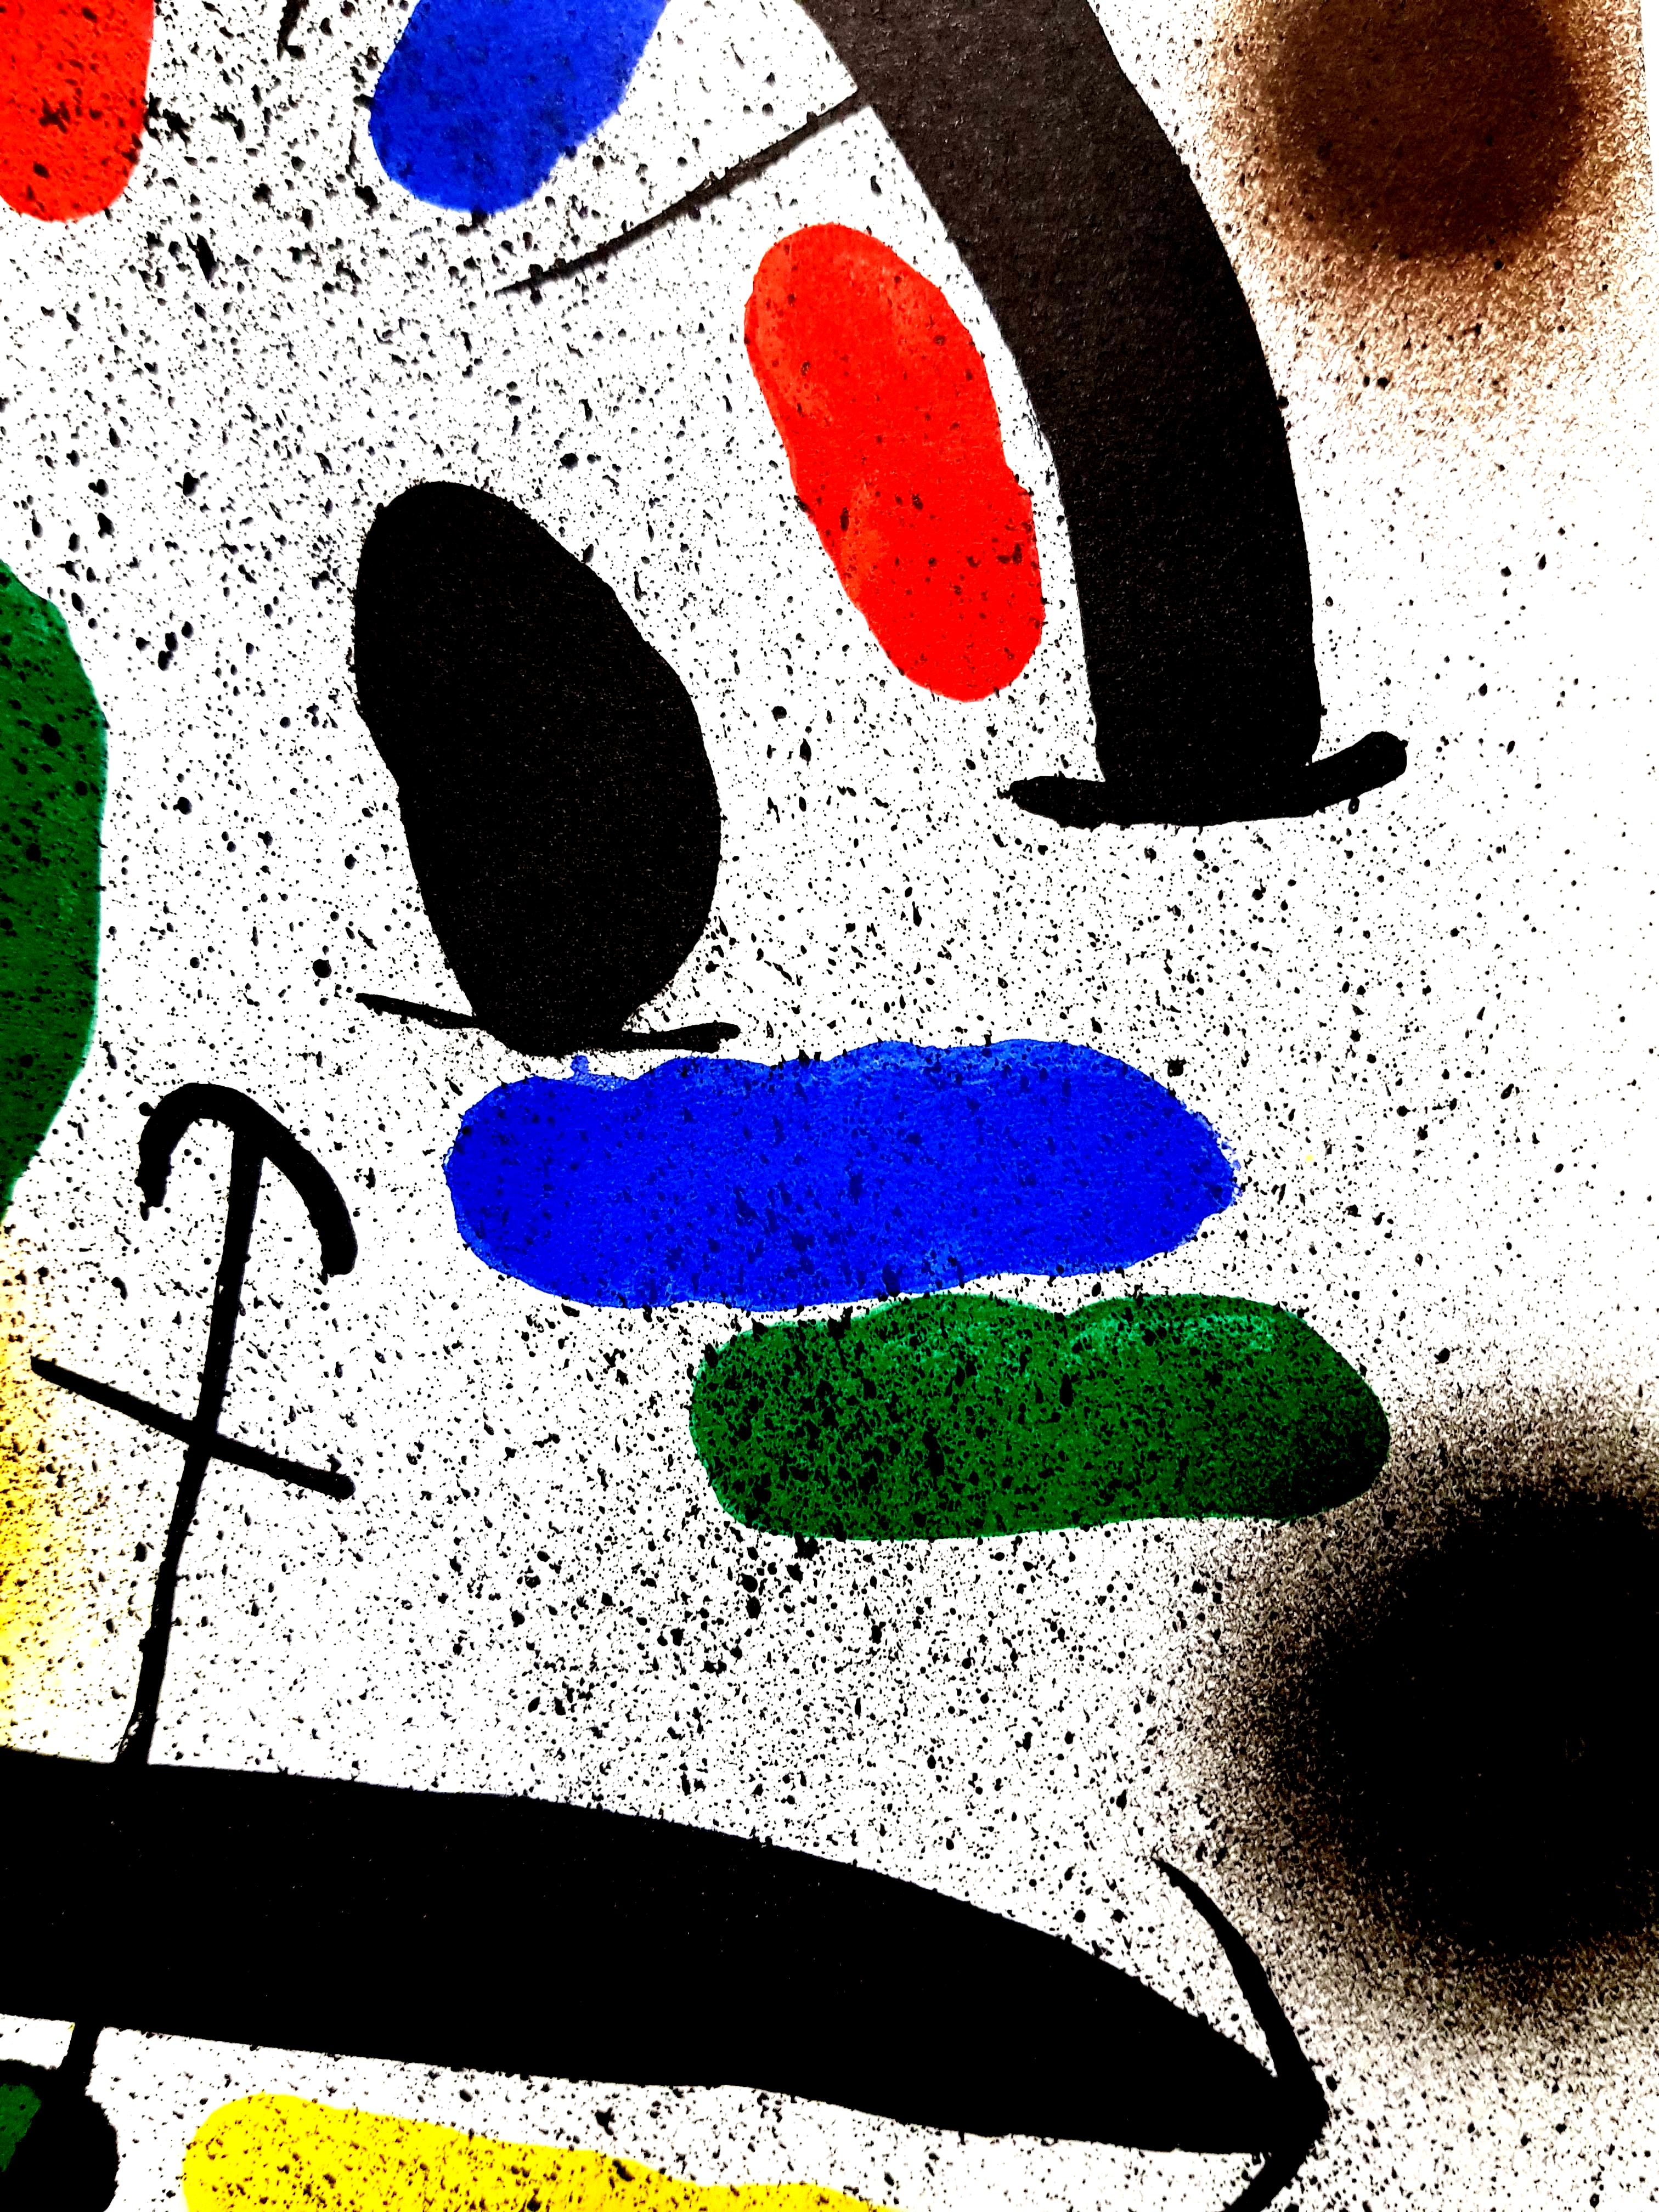 Joan Miro Miro Original Abstrakte Lithographie
Künstler: Joan Miro
Medium: Original-Lithographie auf Rives-Vellum
Mappe: Miro Lithographe V
Jahr: 1981
Auflage: 5000
Bildgröße: 10